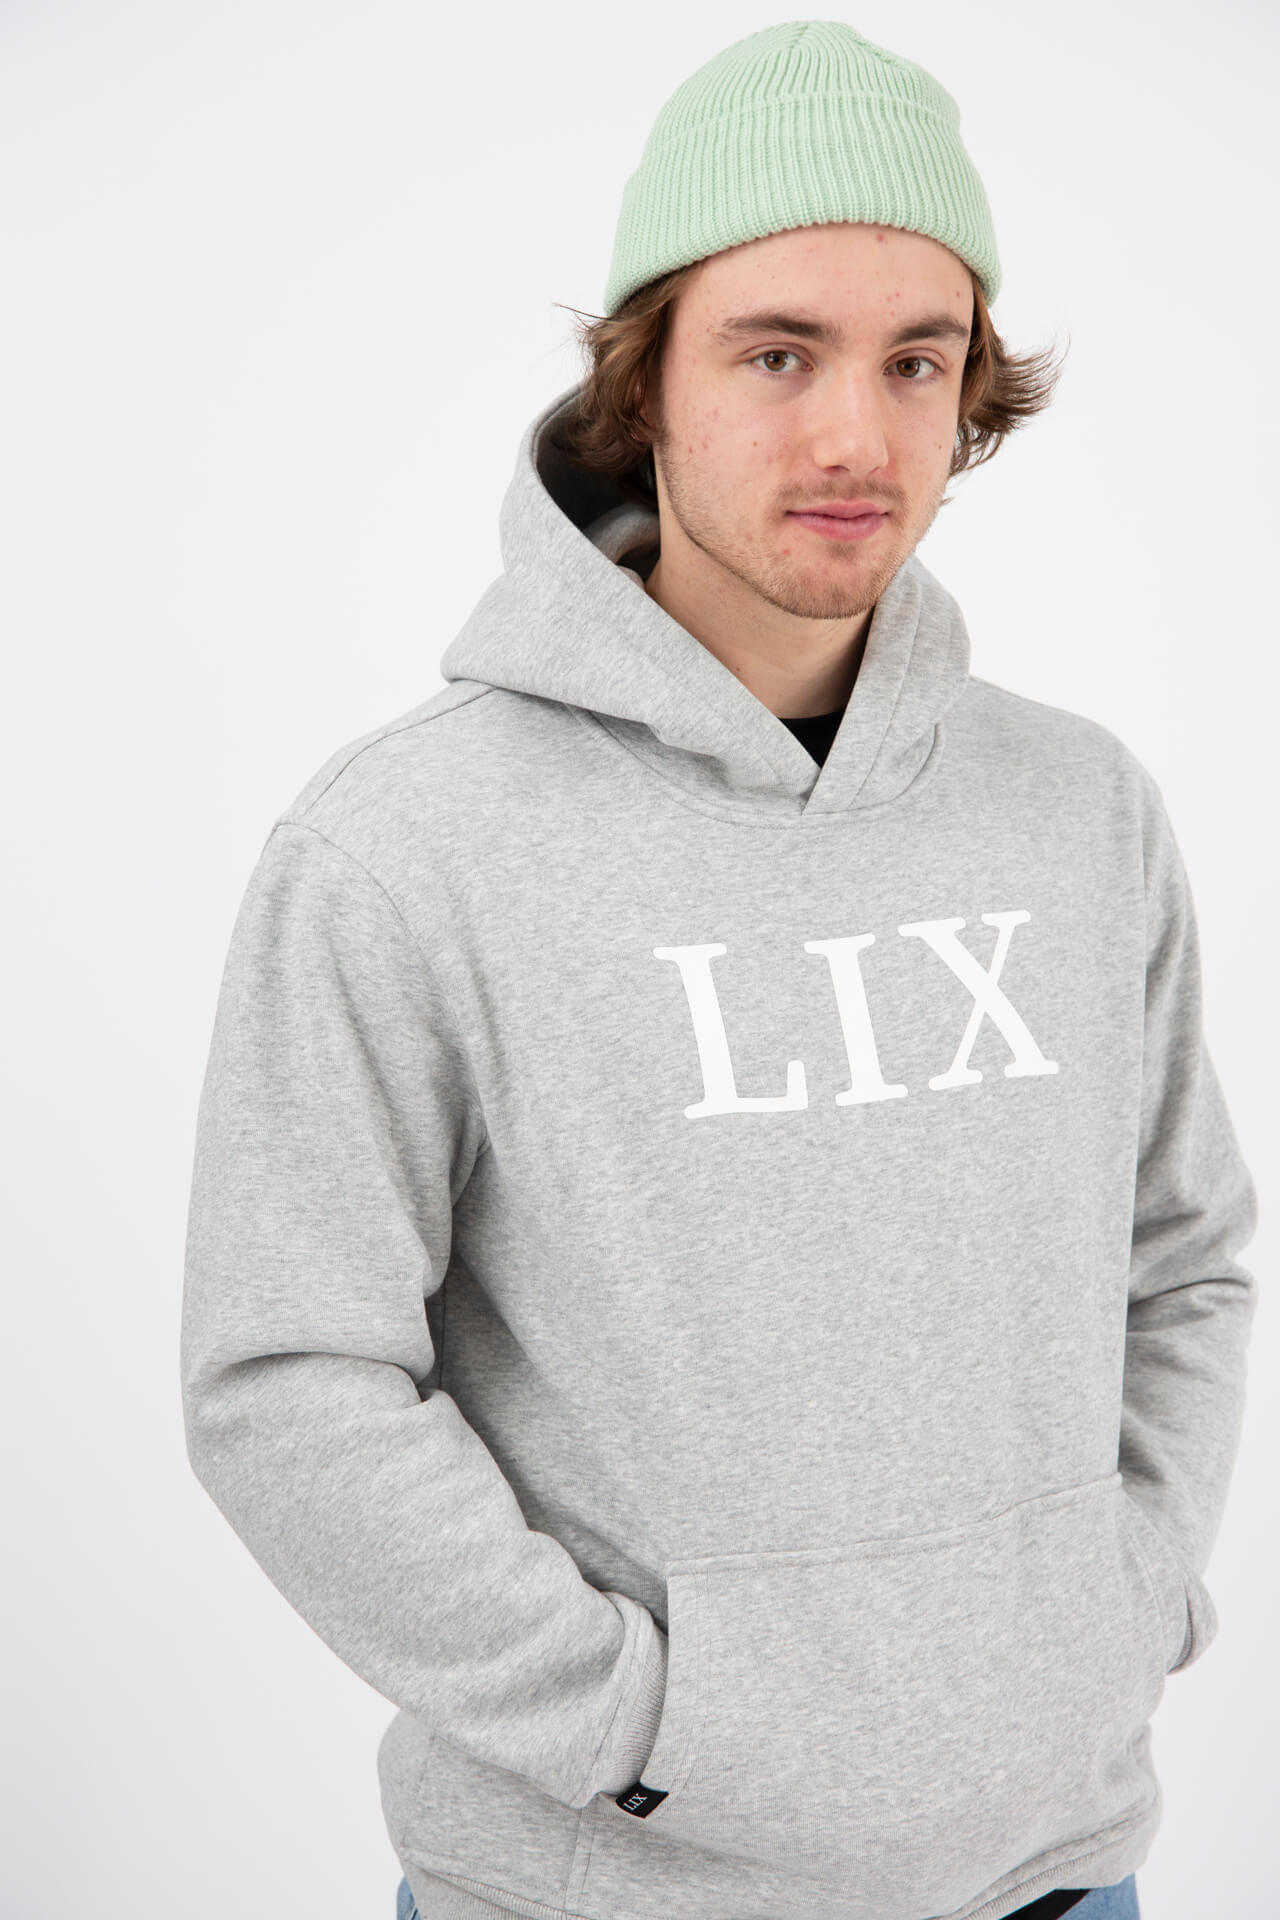 Lix design chandail à capuche unisexe chaud de couleur gris pâle avec impression lix au devant. 